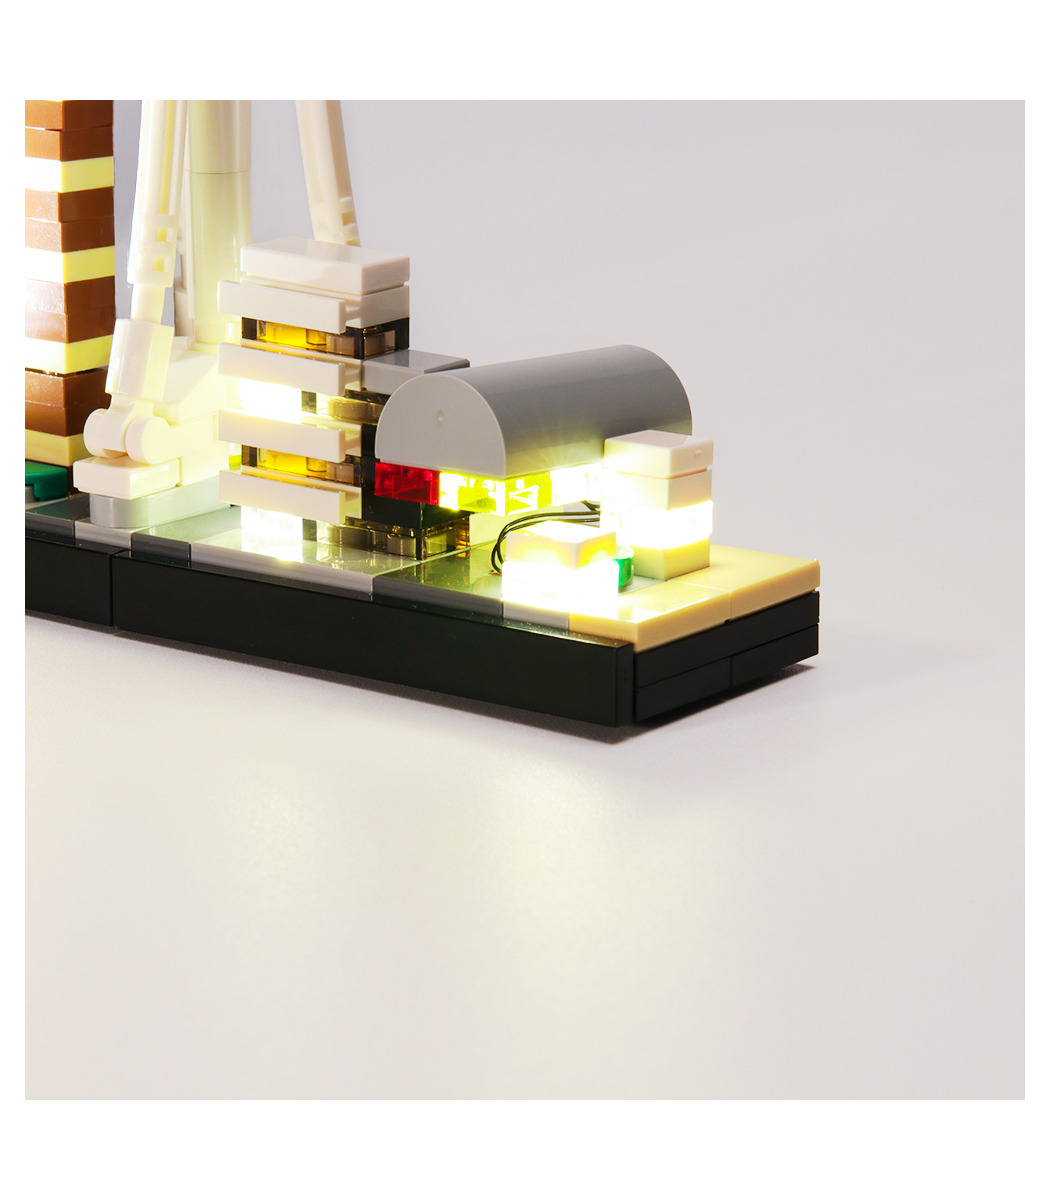 Led Light Kit For 21047 LEGOs Architecture Las Vegas Toys Building